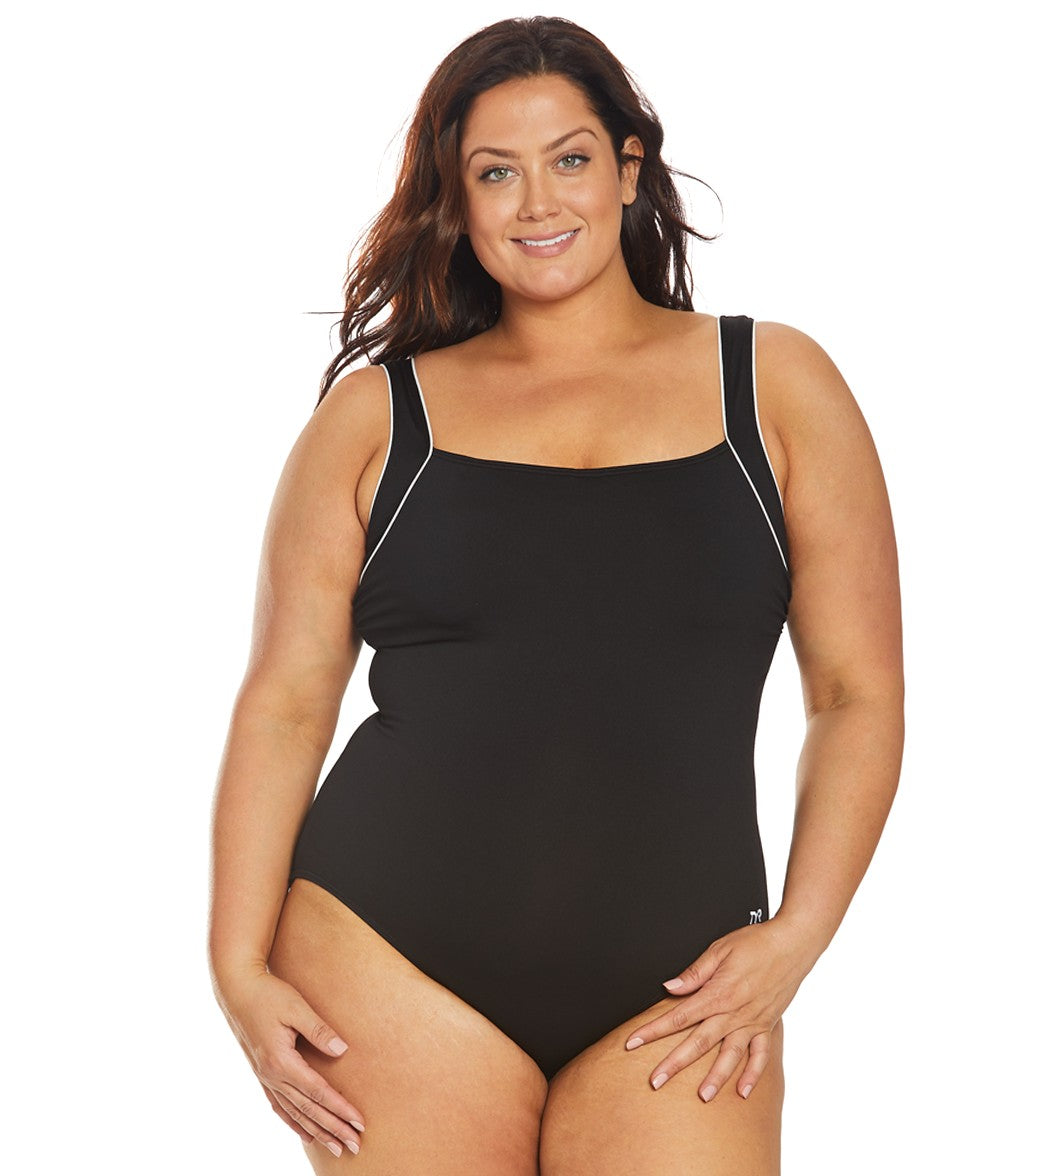 NKOOGH Shapermint Swimwear 2Xl Swimsuits for Women Plus Size Women